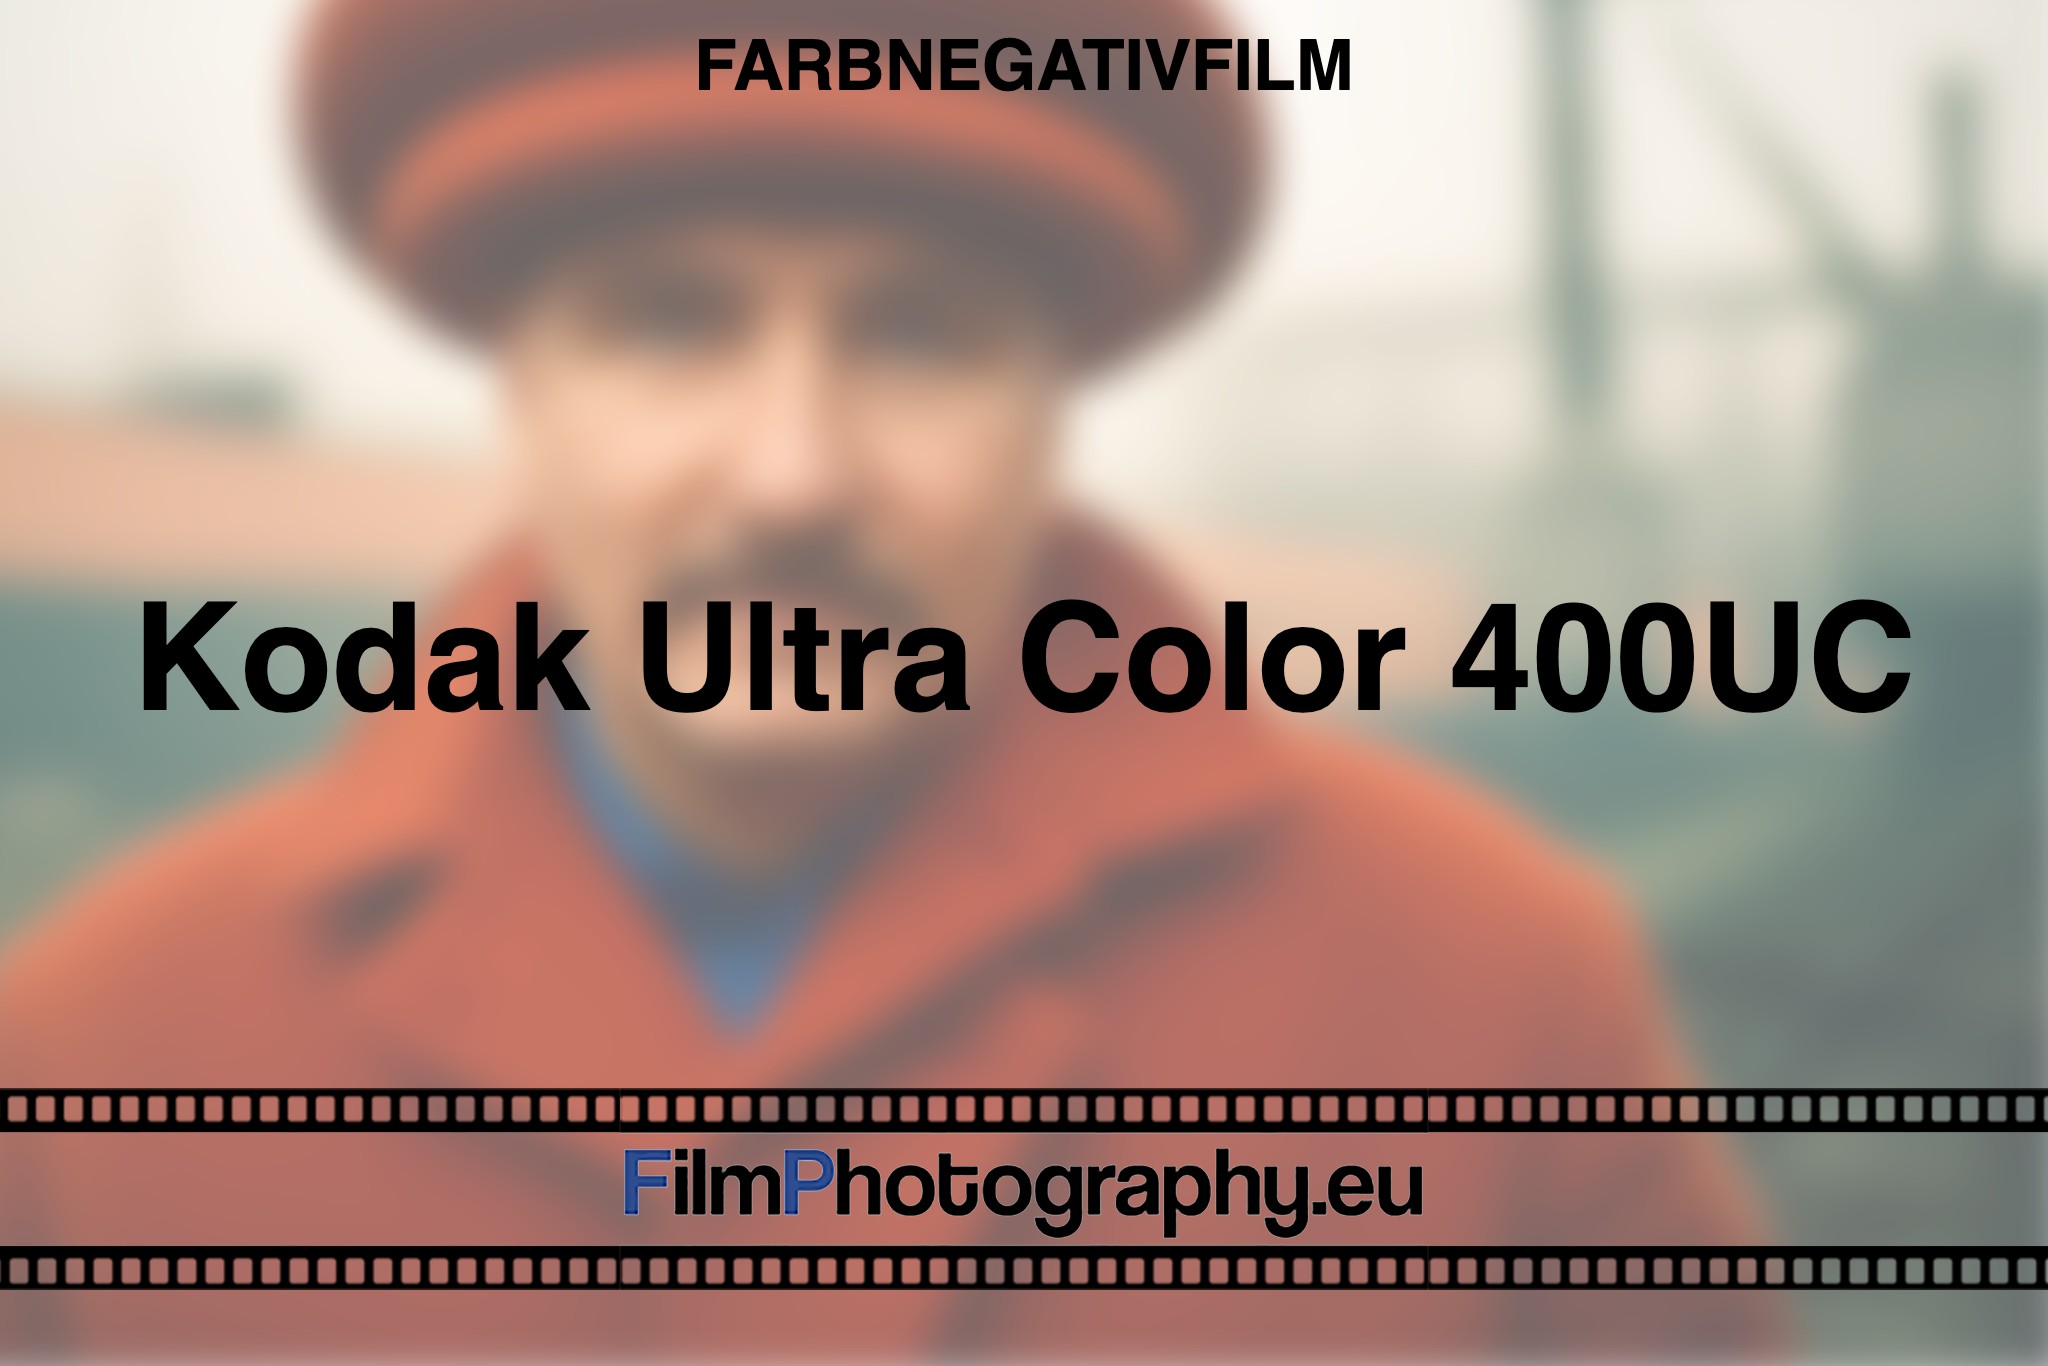 Kodak-Ultra-Color-400UC-Farbnegativfilm-bnv